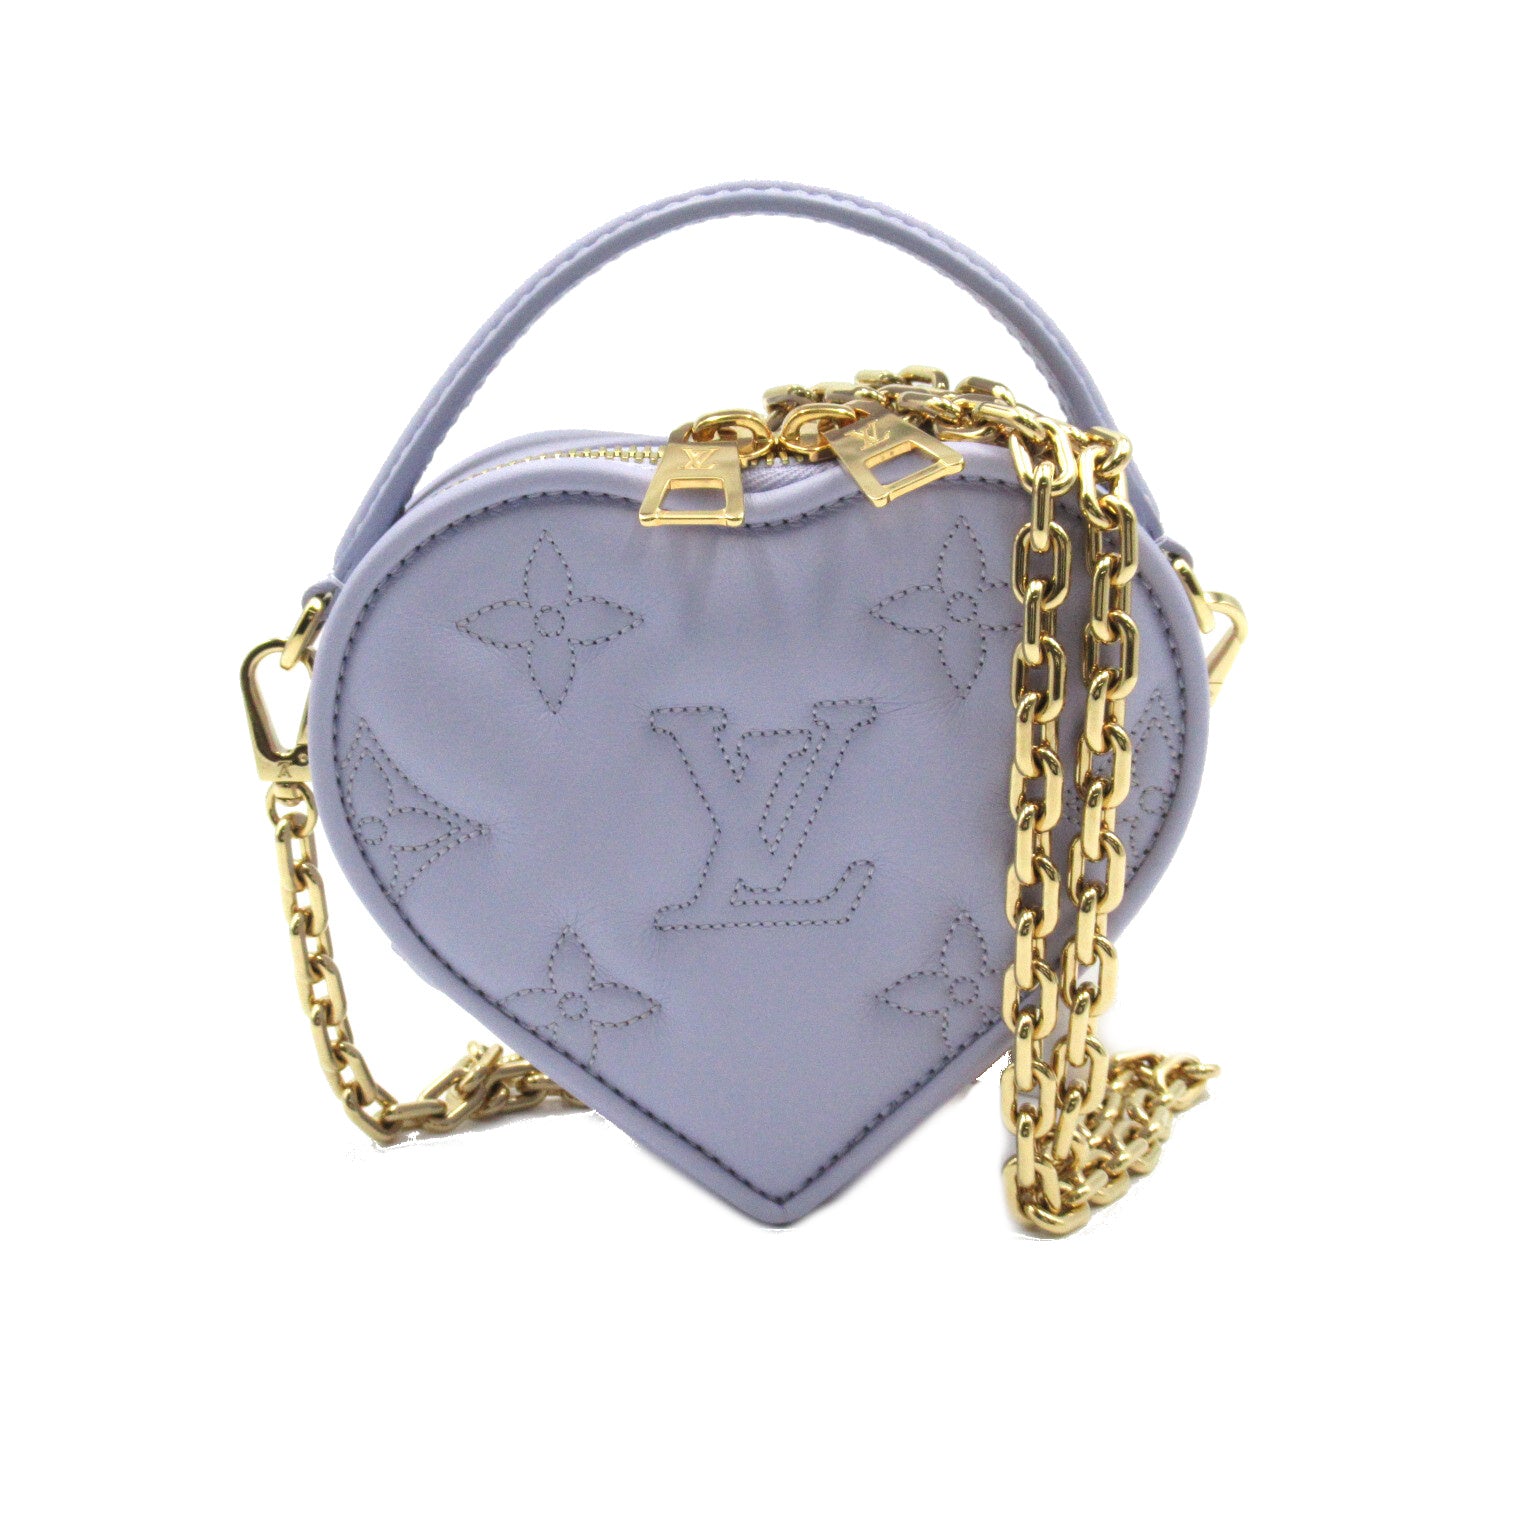 Louis Vuitton Pop My Heart Pouch